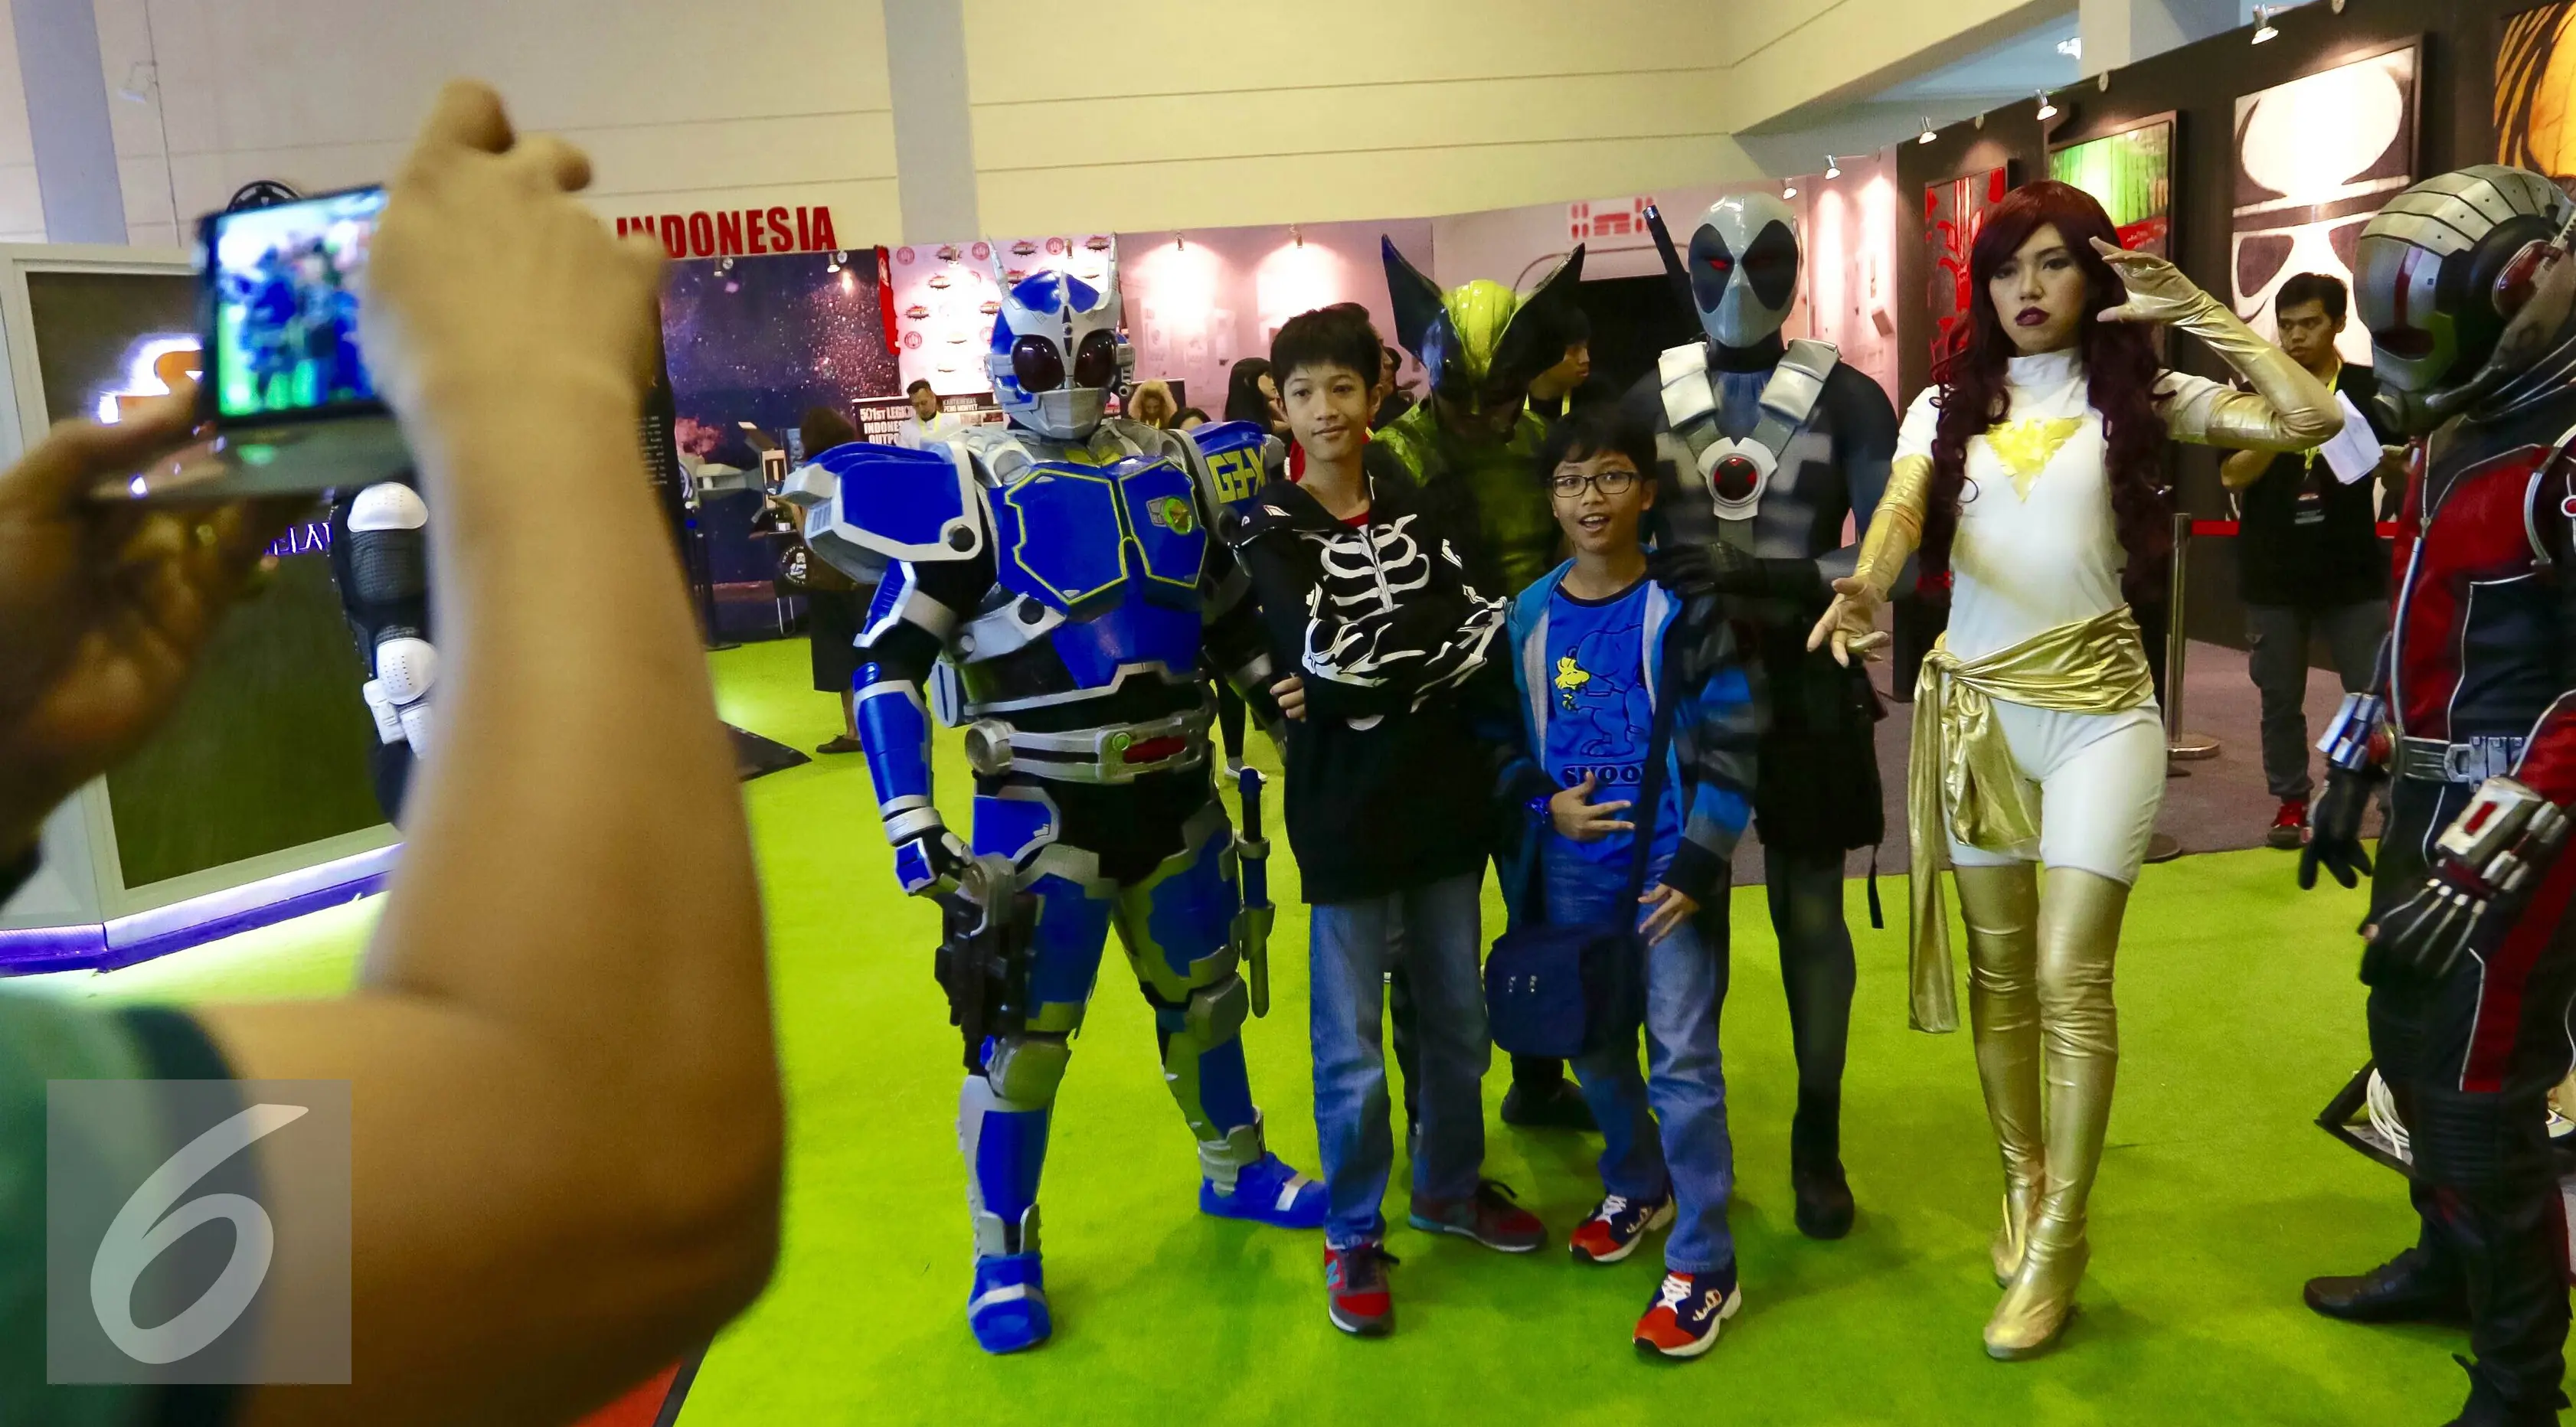 Pengunjung berfoto bersama para tokoh comic con di pameran Indonesia Comic Con di JCC, Jakarta, Sabtu (14/11). Lebih dari 80 produk baru dan eksklusif diperkenalkan pada pameran tersebut. (/Fery Pradolo)